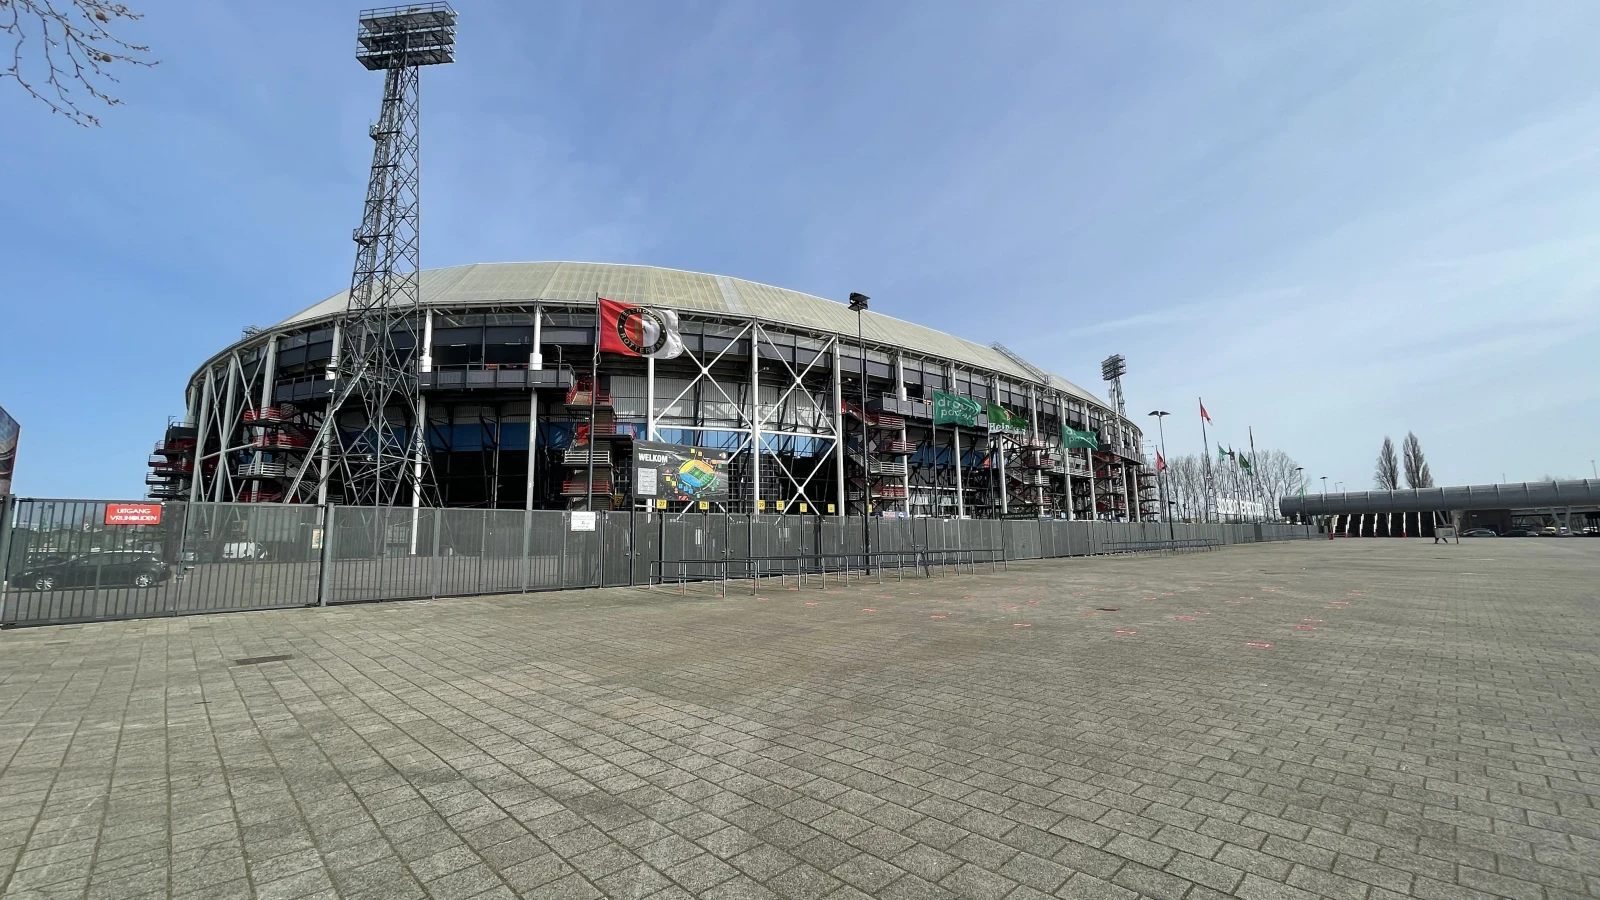 Rijnmond: 'Stadion Feijenoord gaat werk maken van eenwording met voetbalclub Feyenoord'